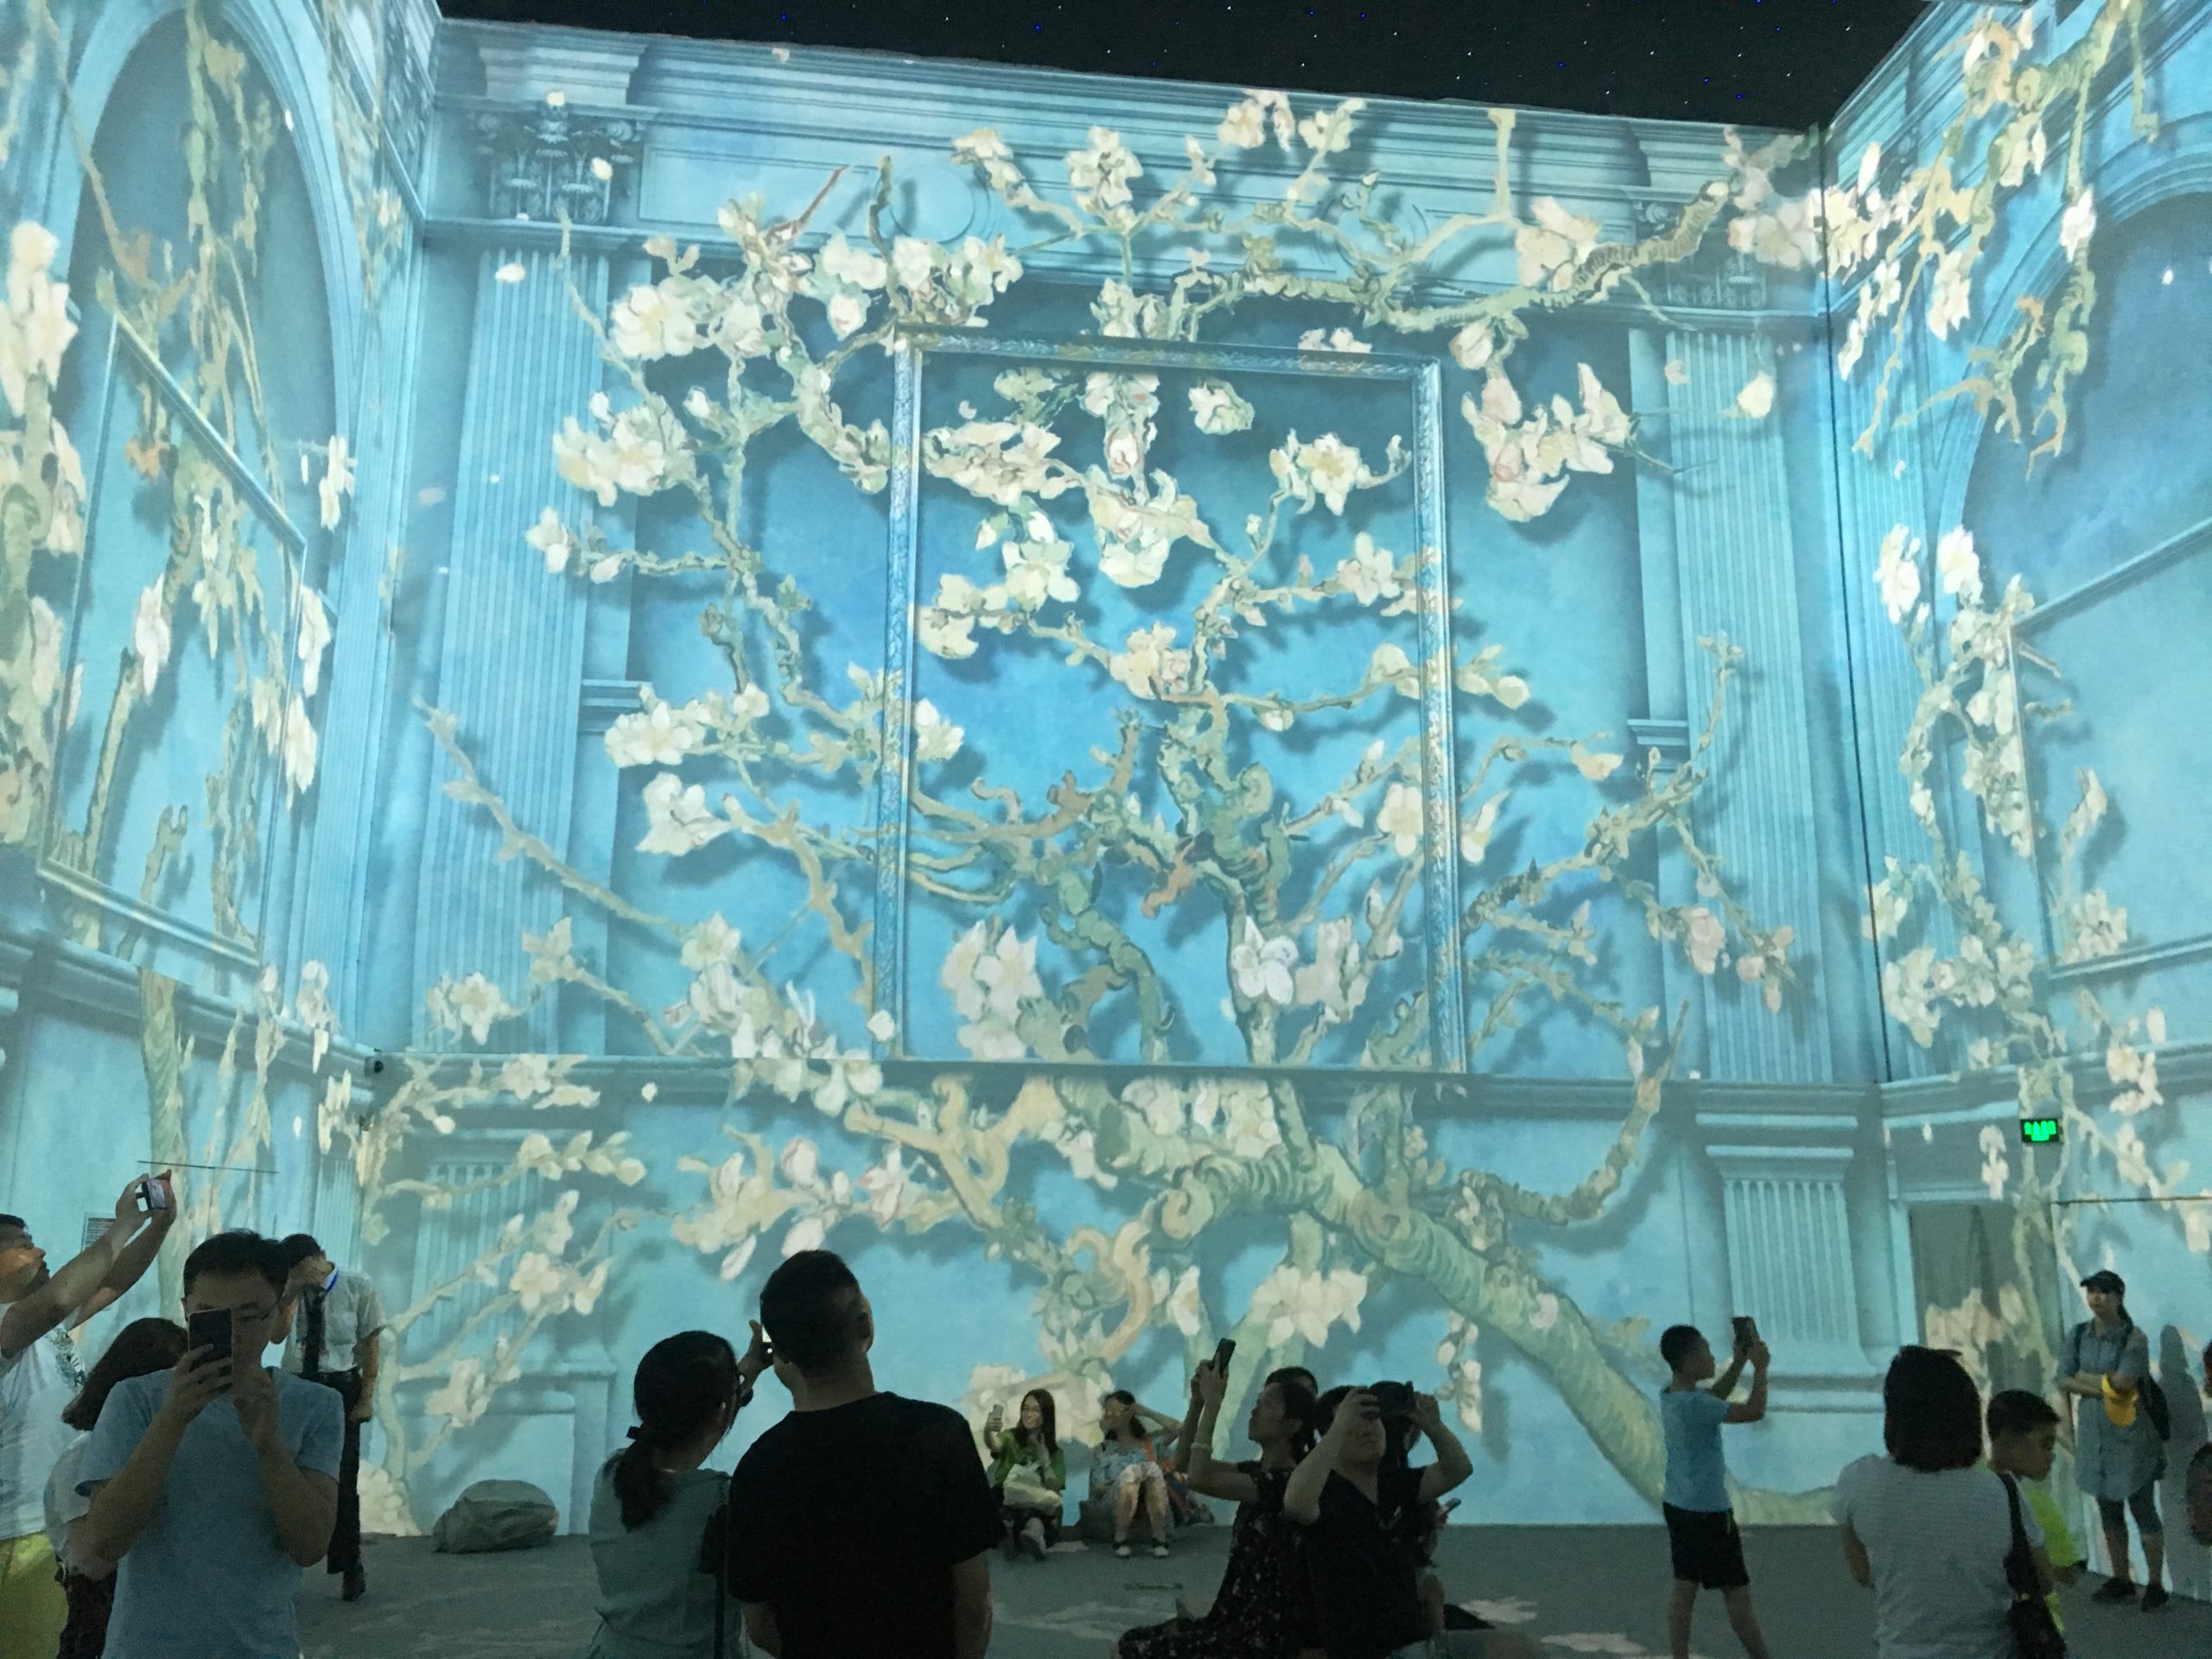 【2019年7月】墨境轩组织学生在中国国家博物馆看梵高展 活动 第2张